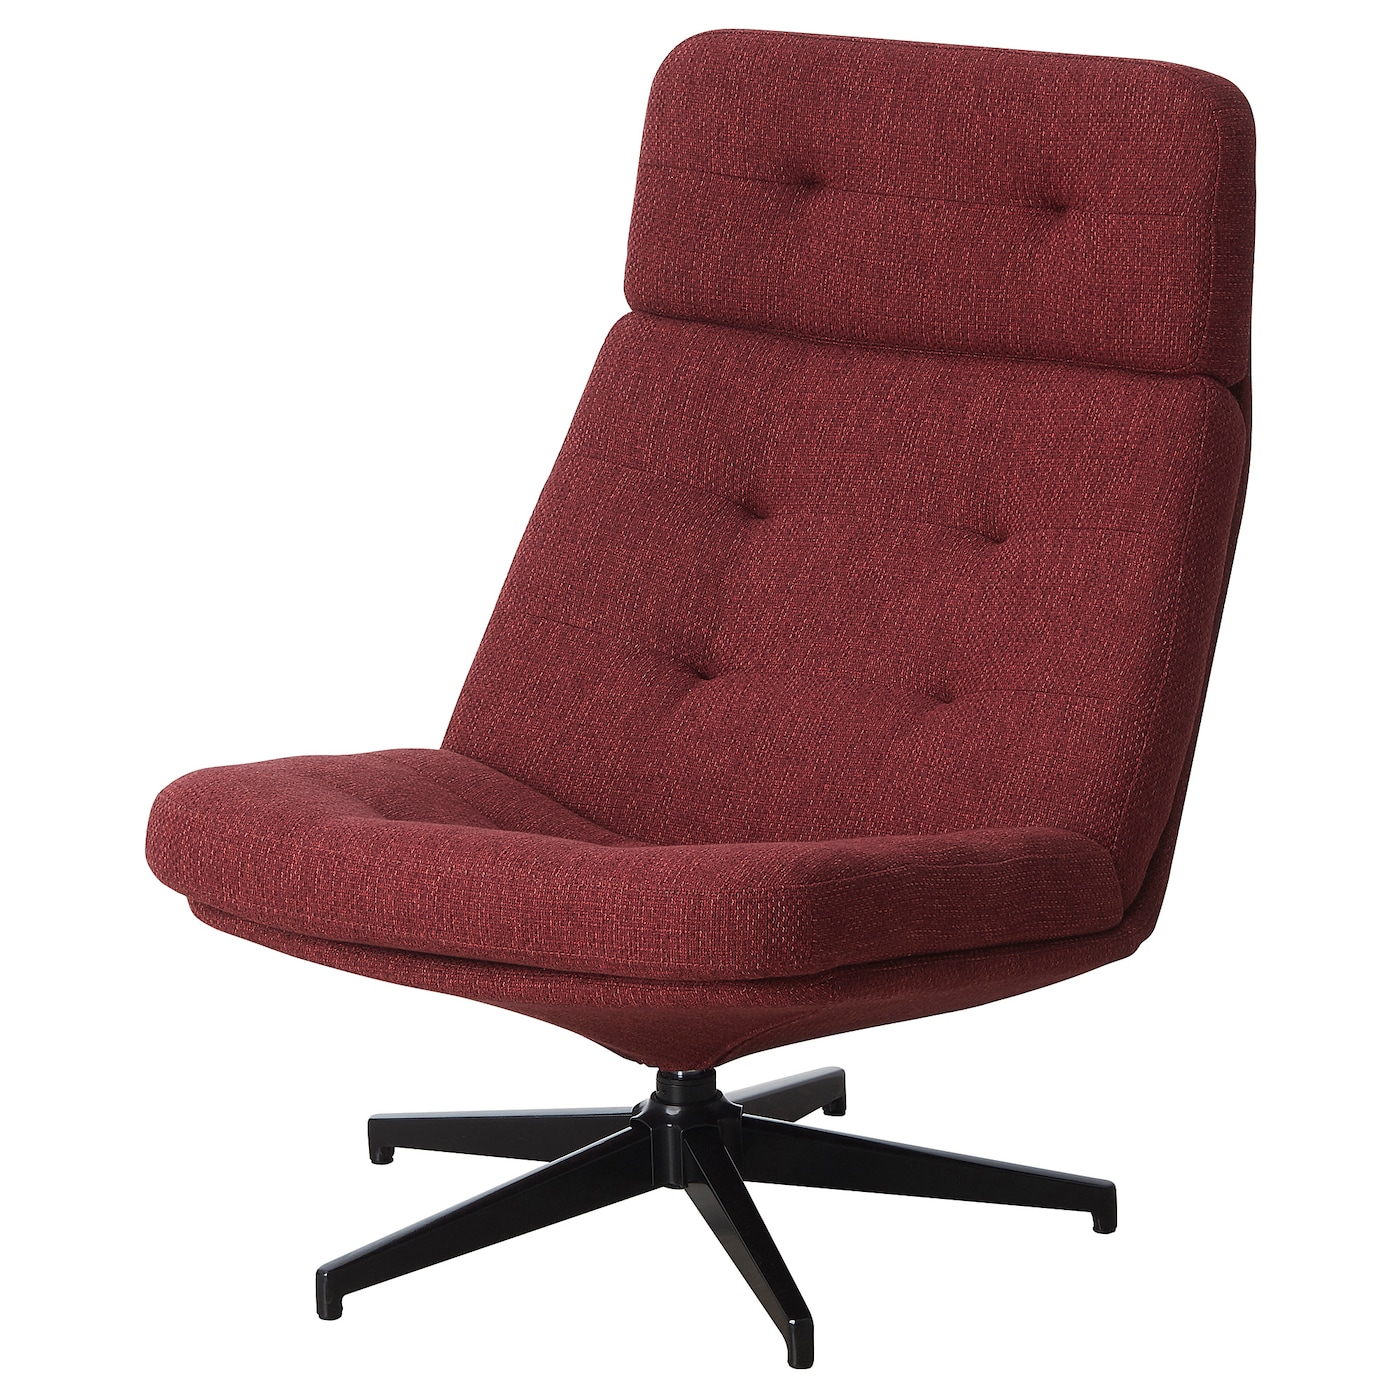 вращающееся кресло раскладное ХАВБЕРГ Вращающееся кресло, Лейде красно-коричневый HAVBERG IKEA